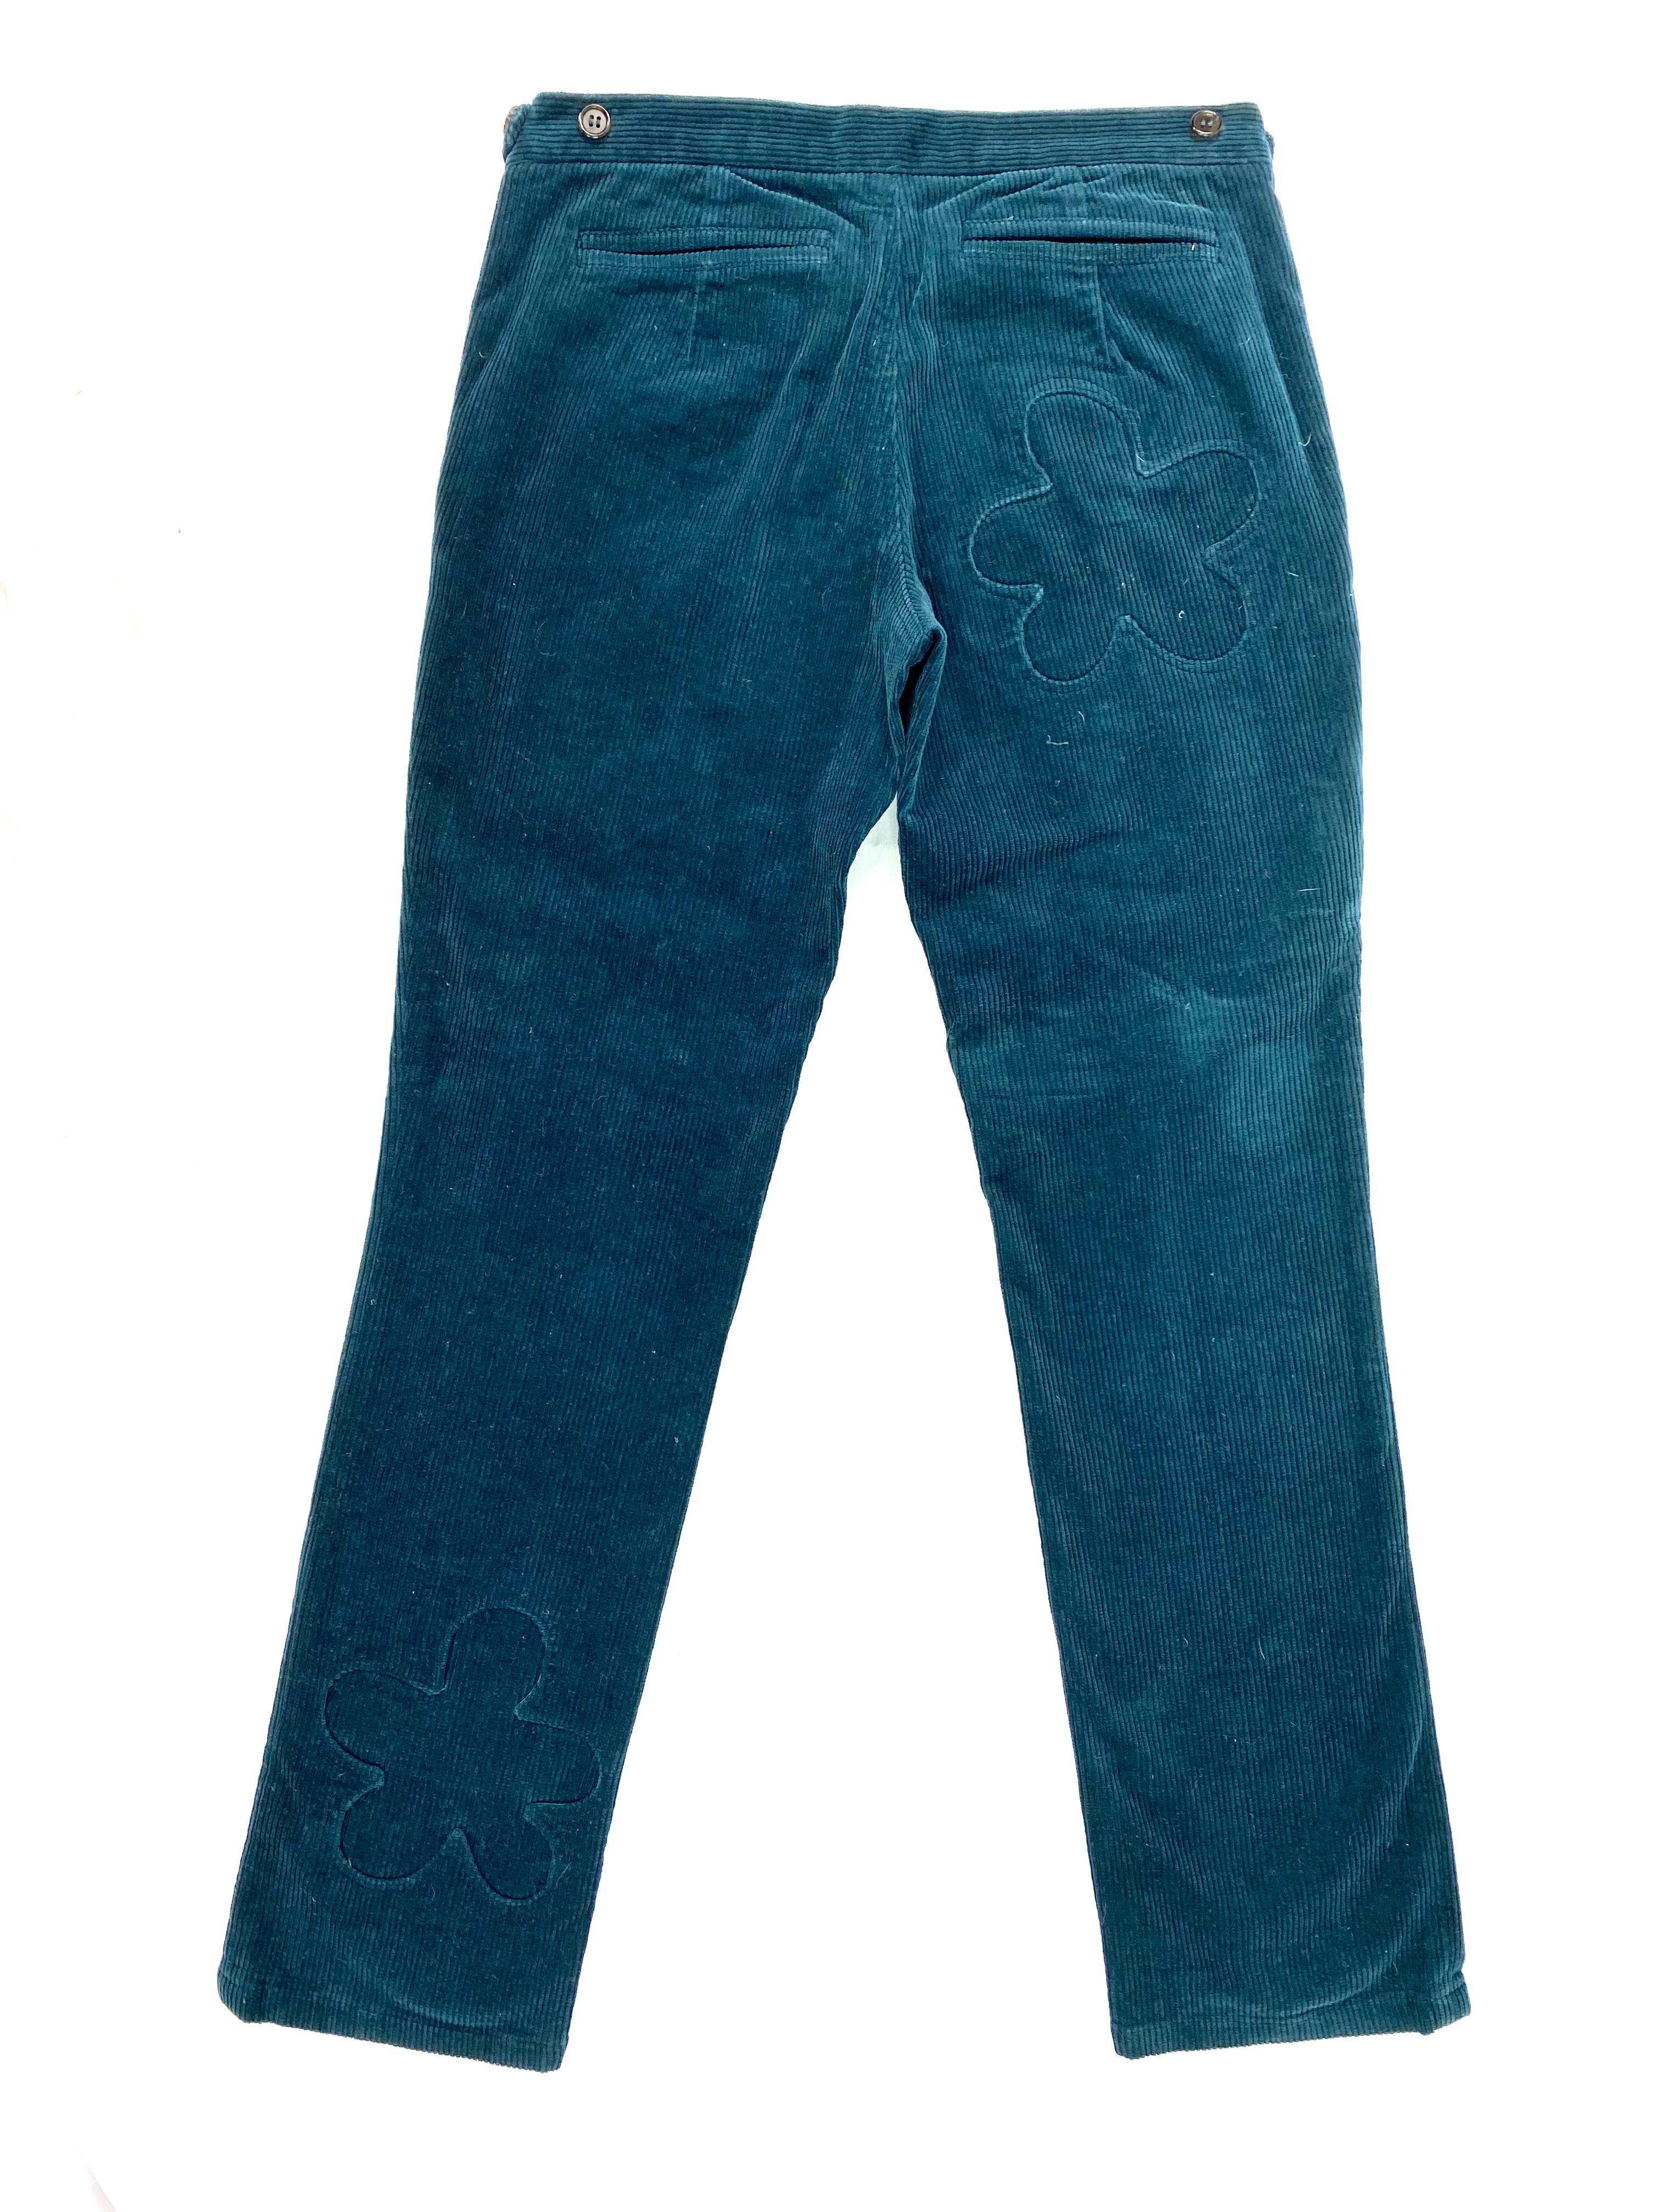 Women's or Men's Under Cover Jun Takahashi Turquoise Corduroy Velvet Skinny Pants Size S For Sale